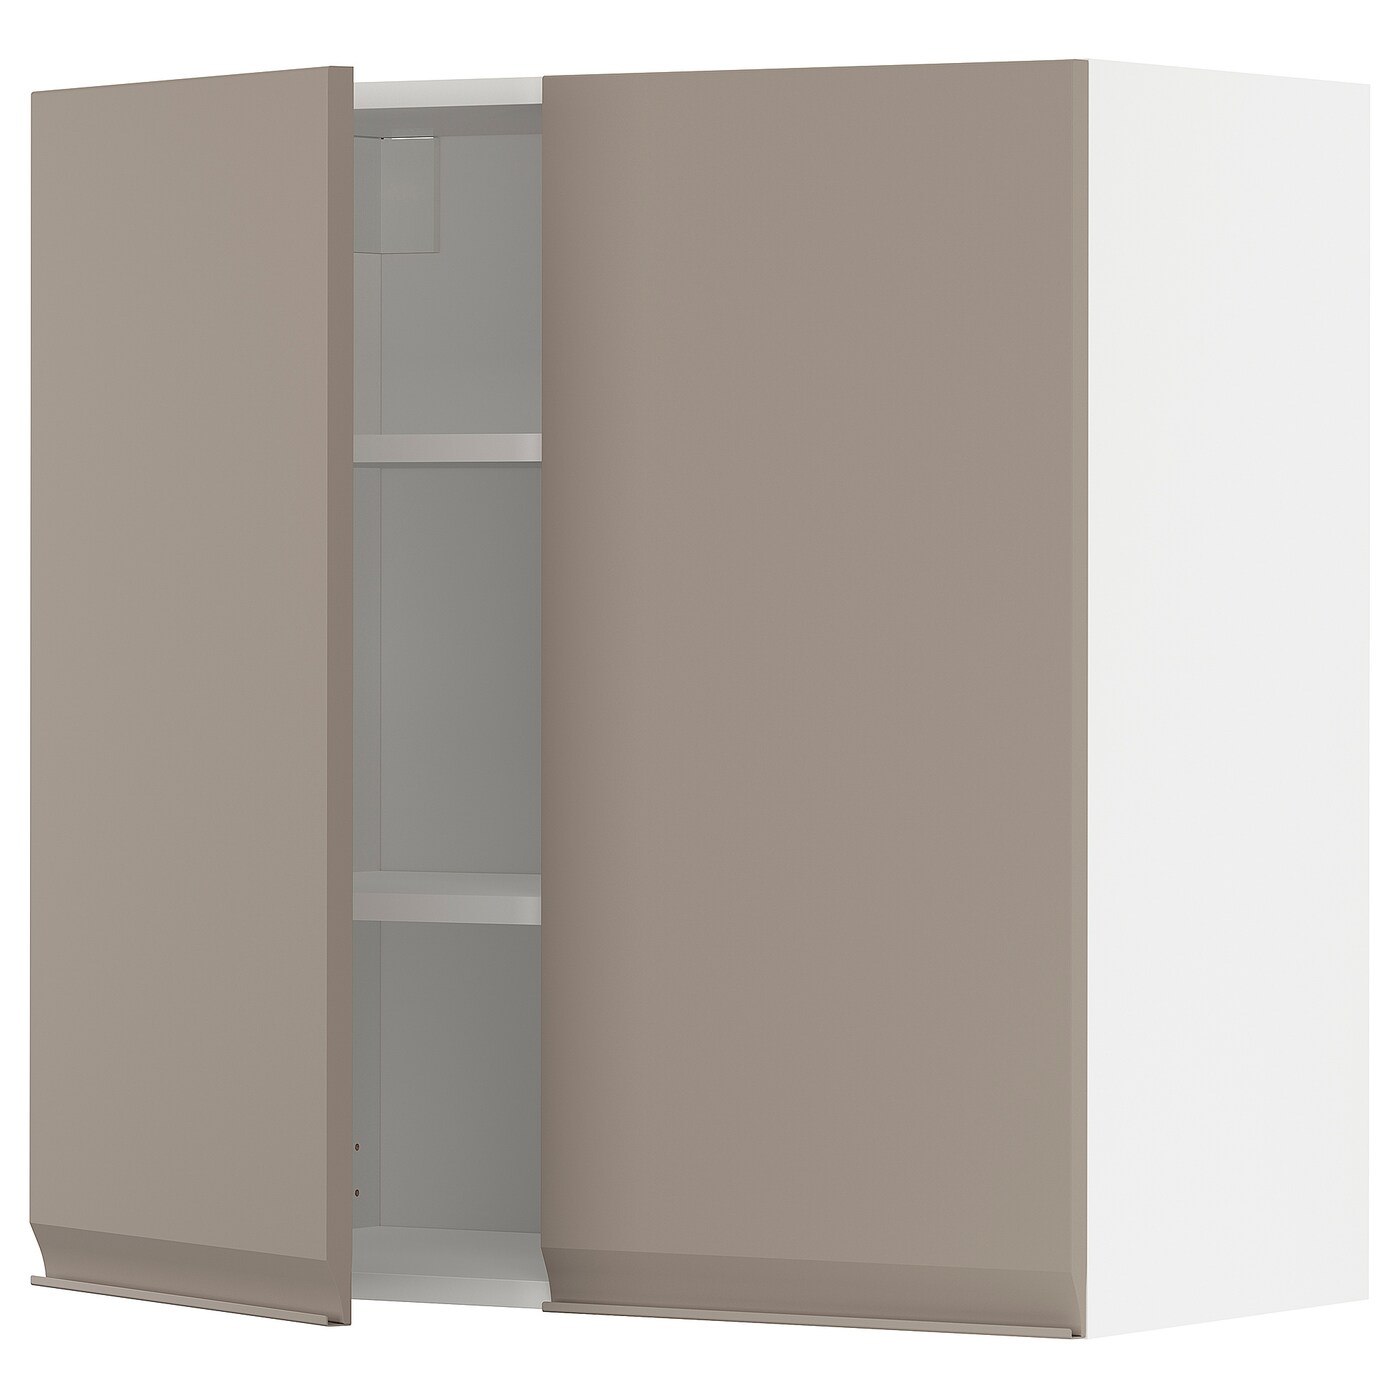 Навесной шкаф с полкой - METOD IKEA/ МЕТОД ИКЕА, 80х80 см, белый/светло-коричневый